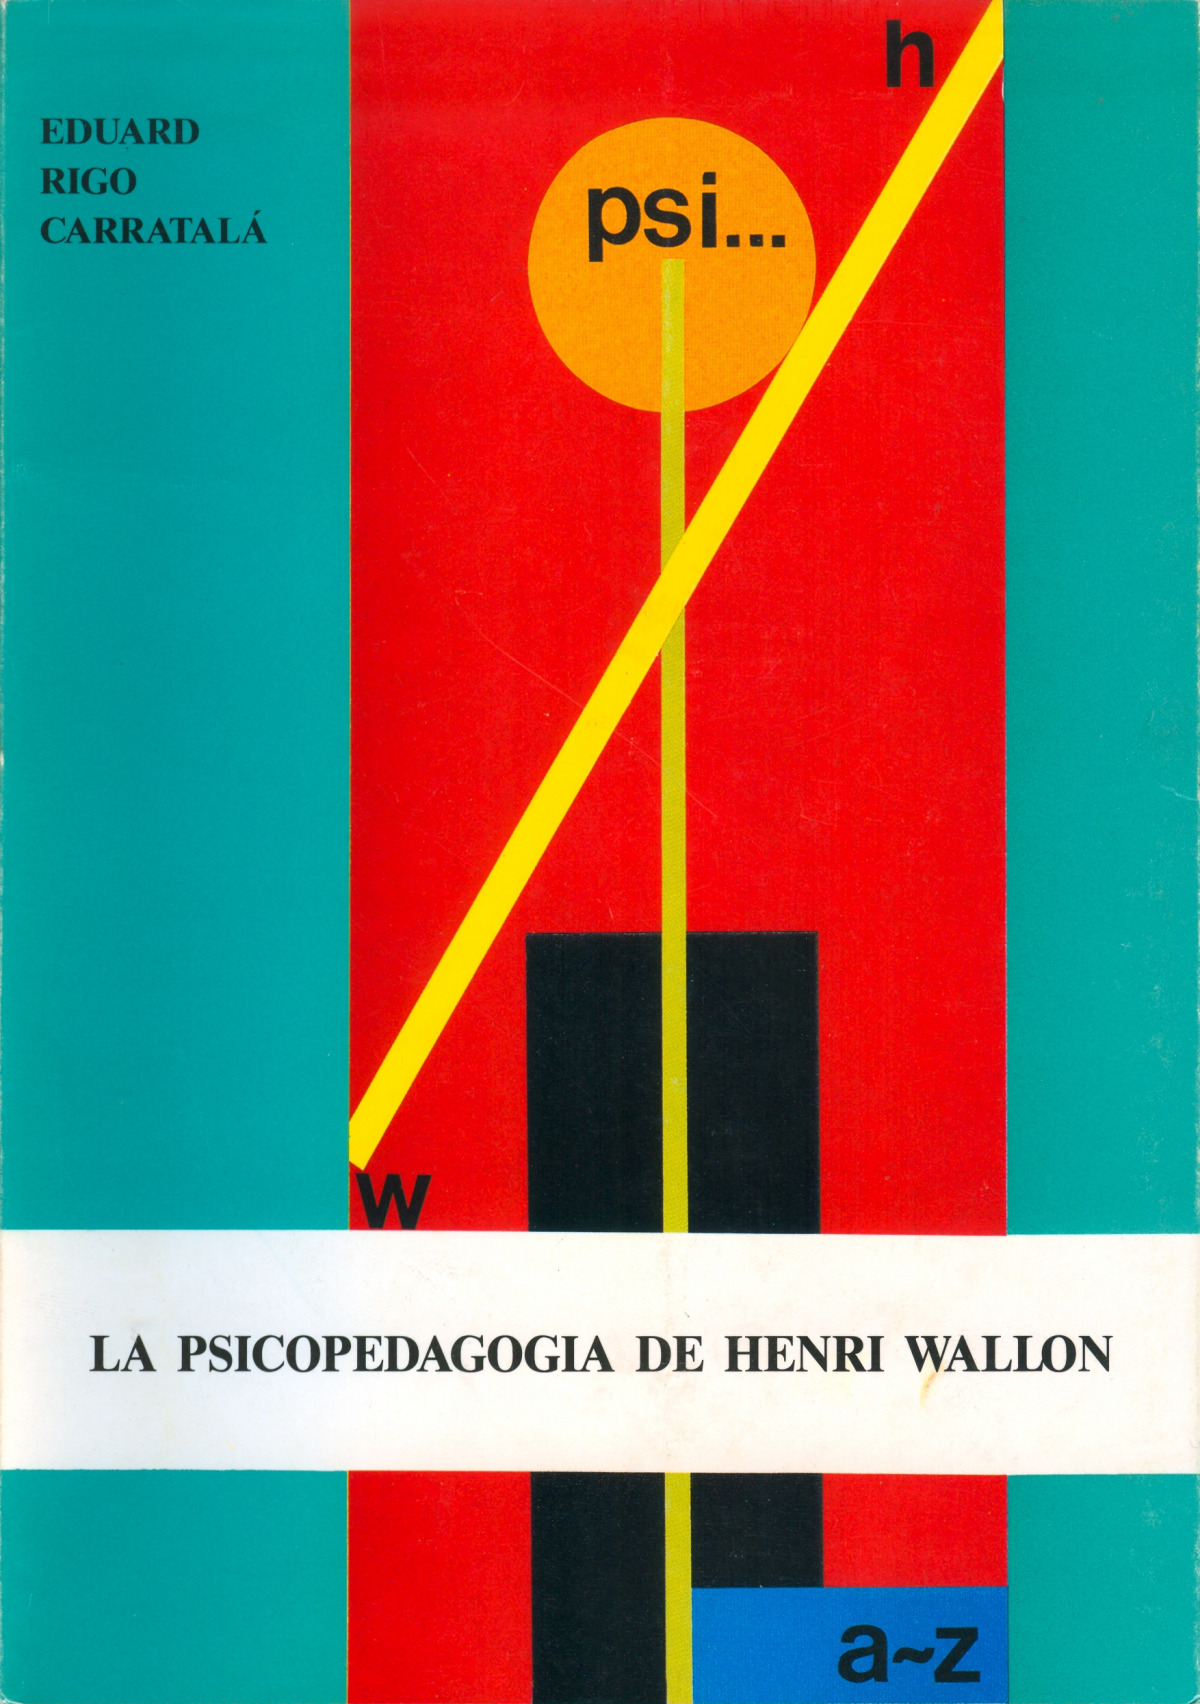 La psicopedagogia de henri wallon - Rigo Carratala, Eduard